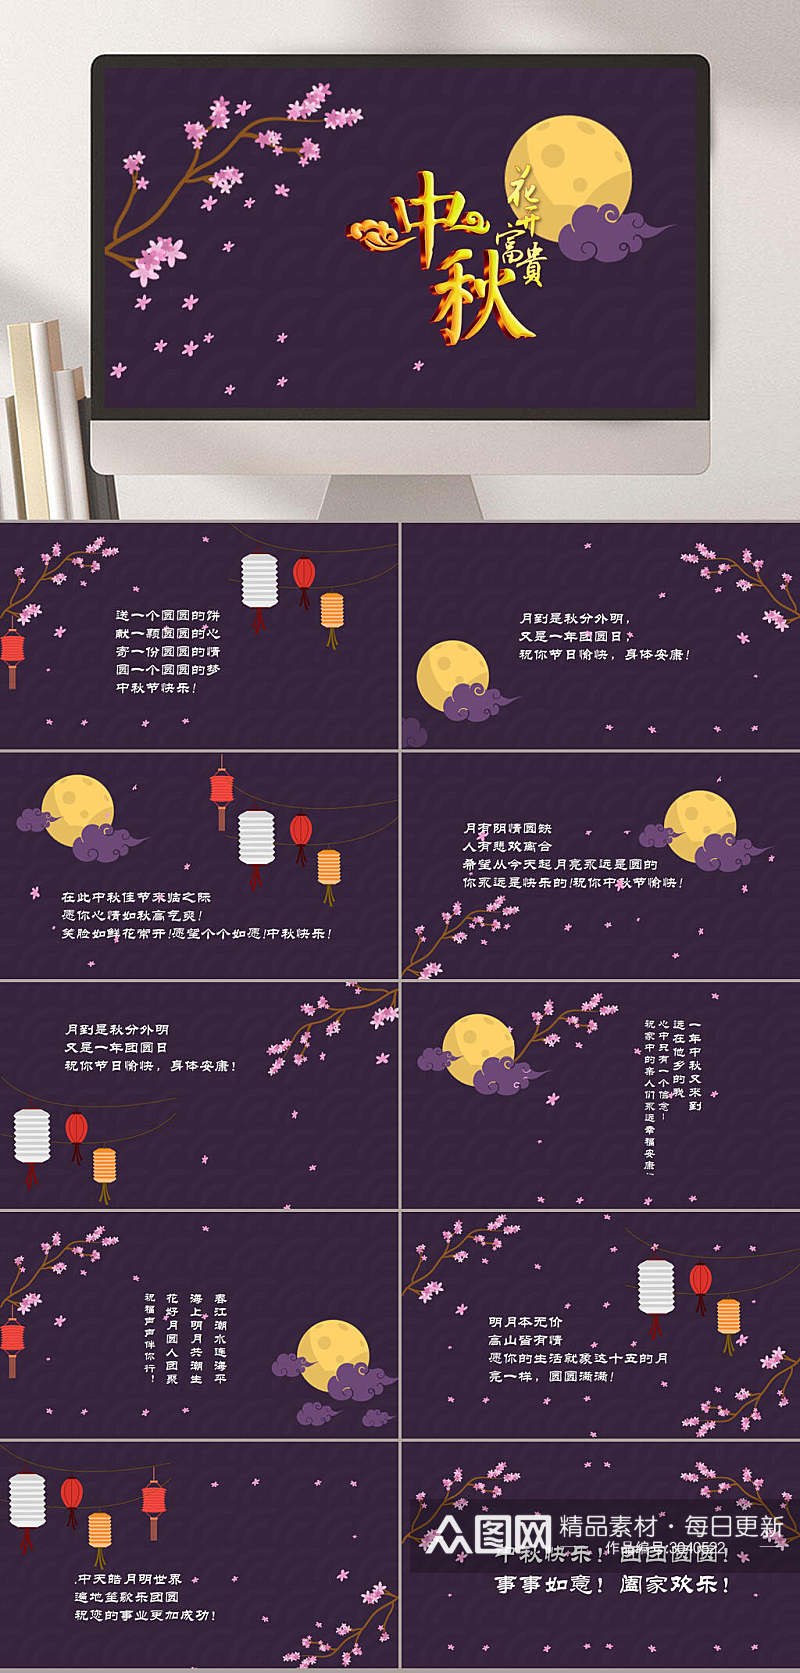 欢庆中秋节花儿圆月紫色背景节日PPT素材